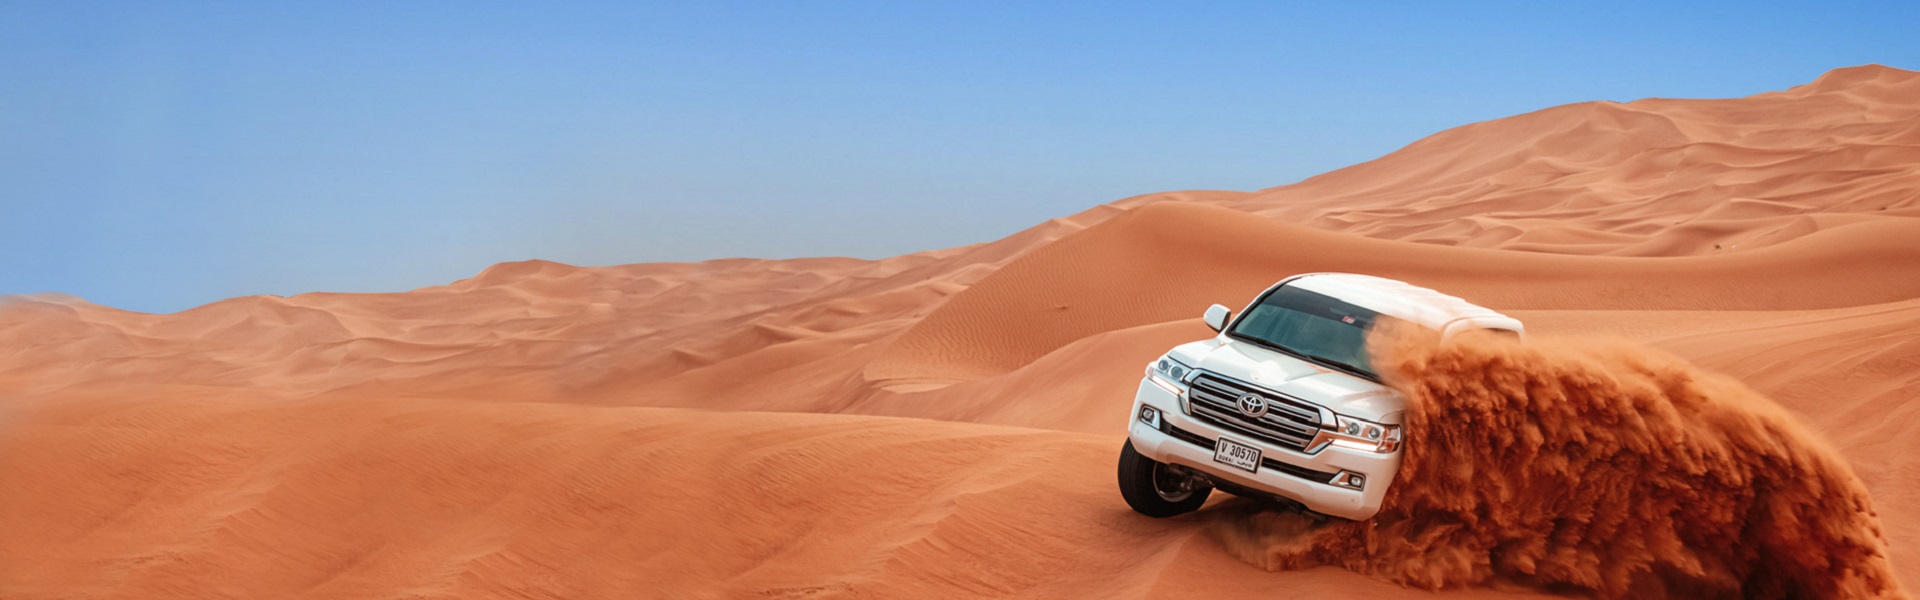 Car rental Beograd | Desert safari in Dubai